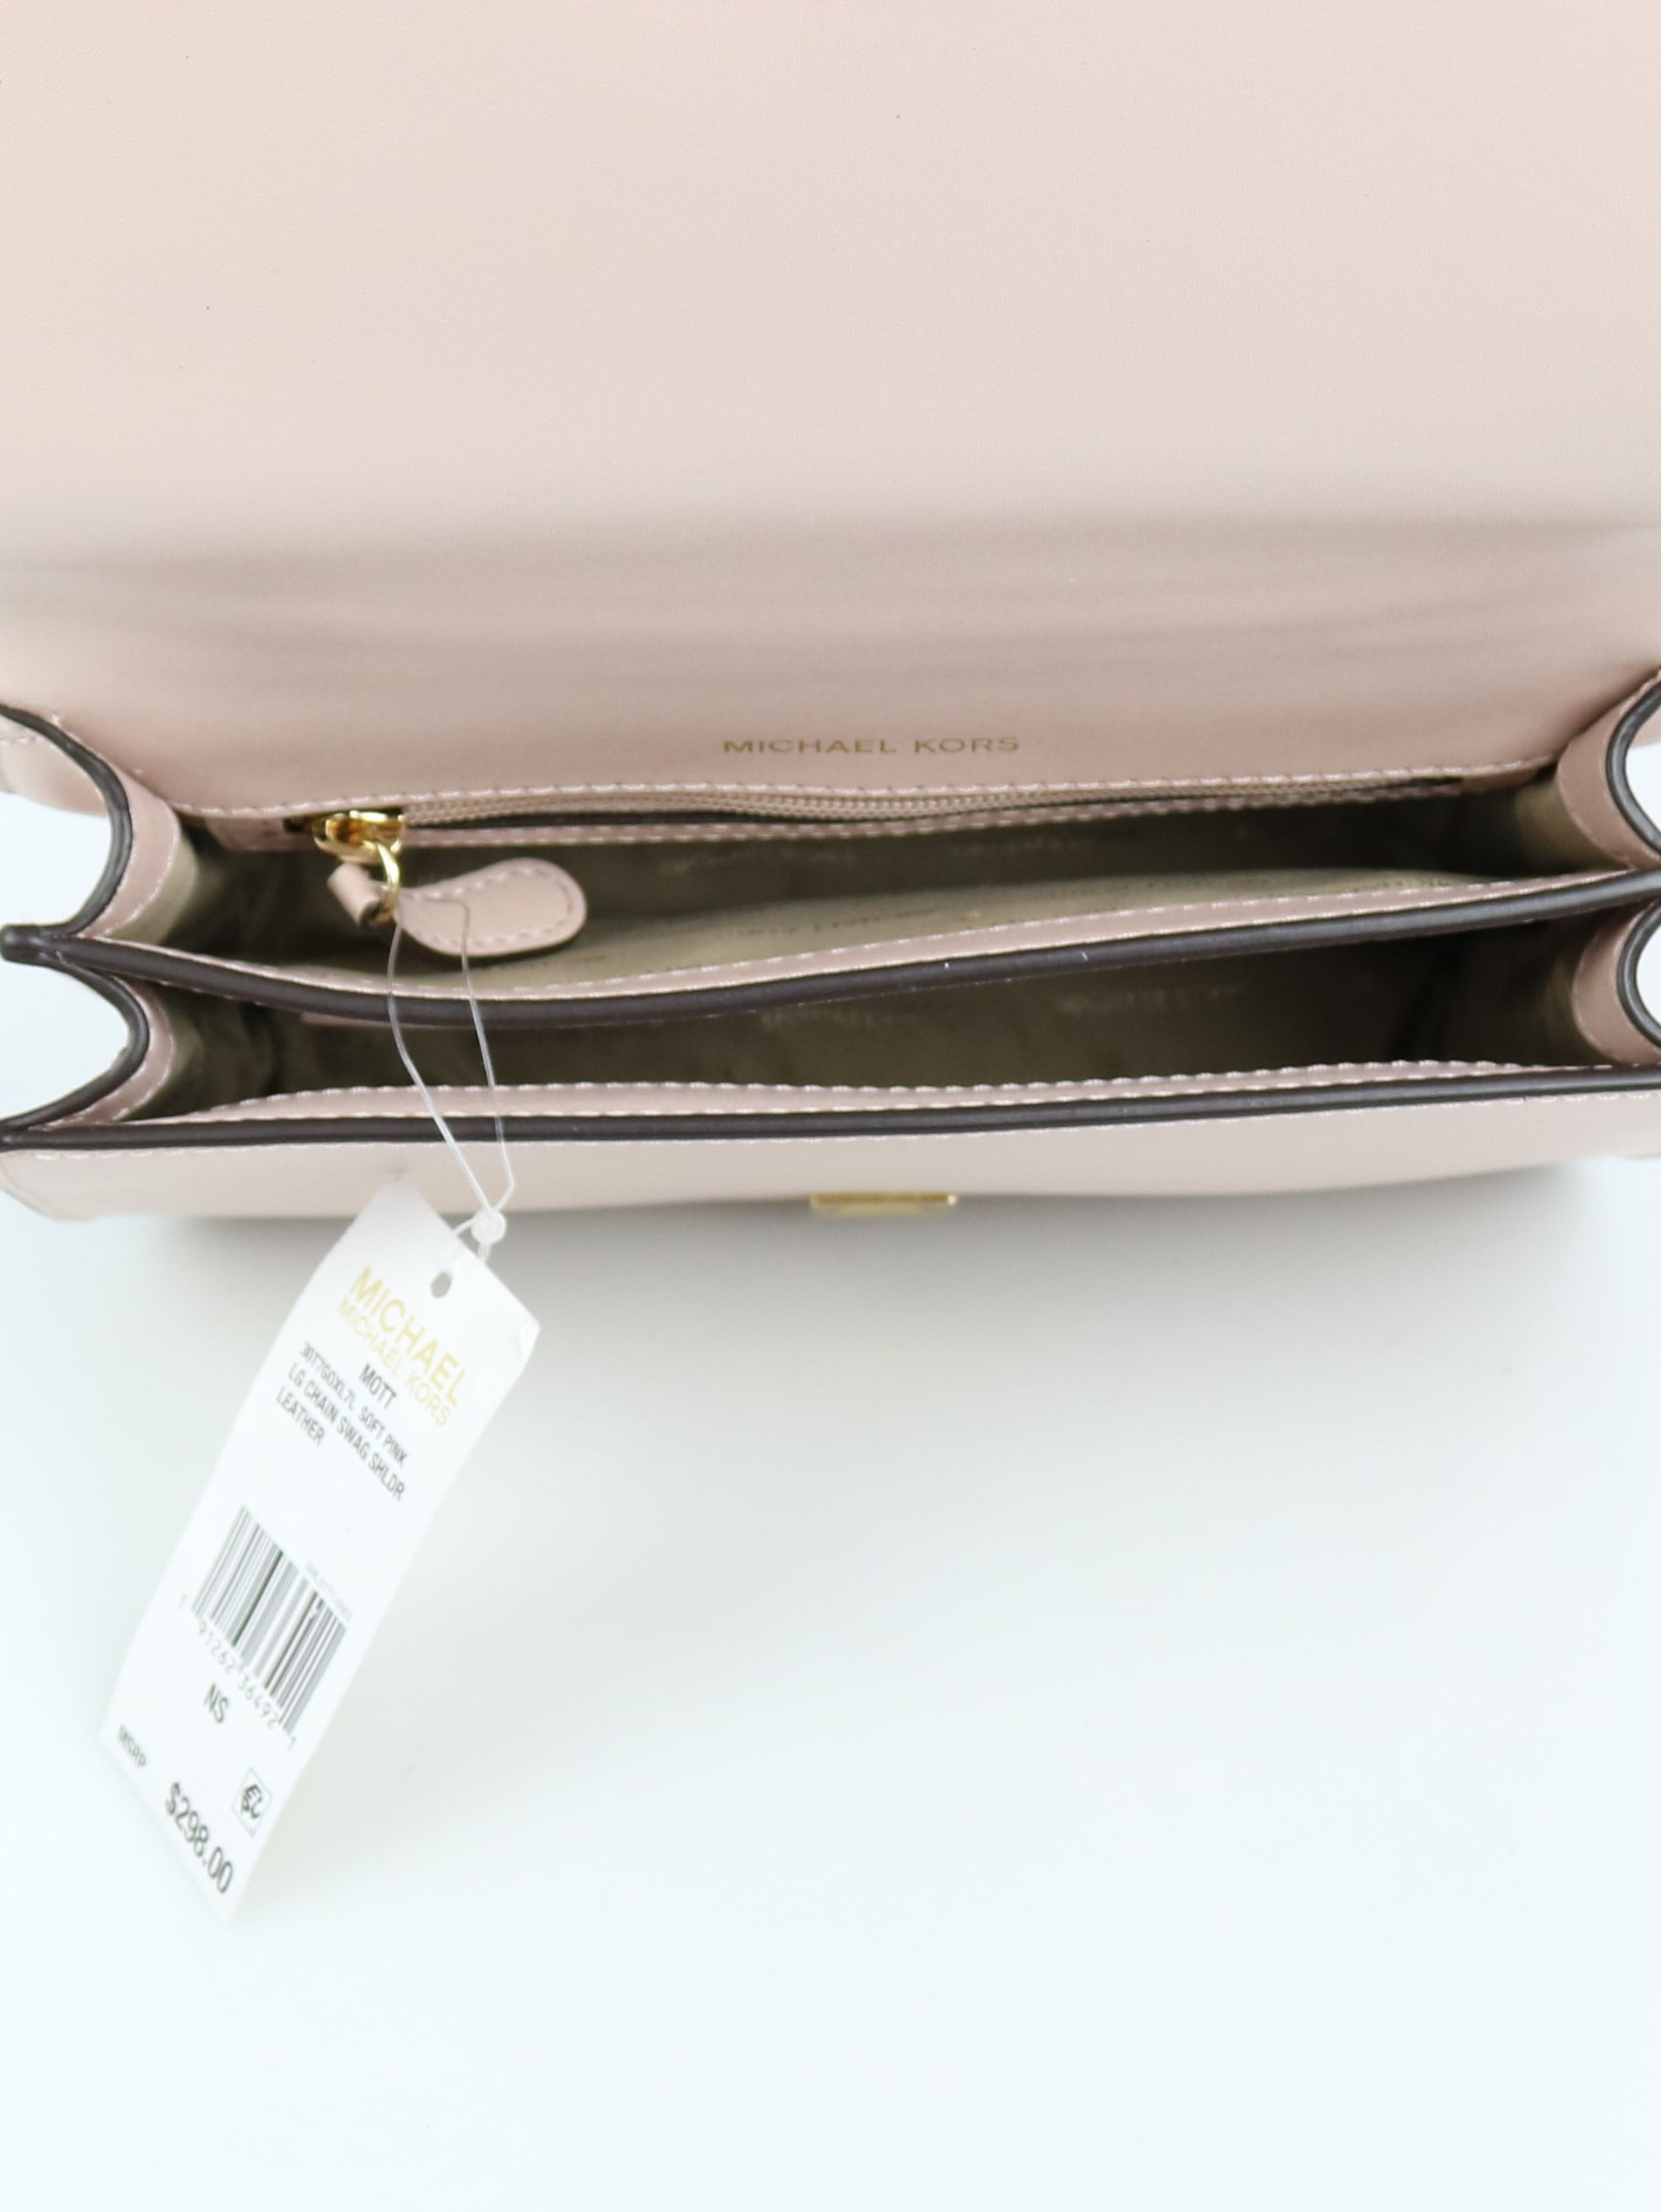 Michael Kors Mott Small Shoulder Bag - Macy's